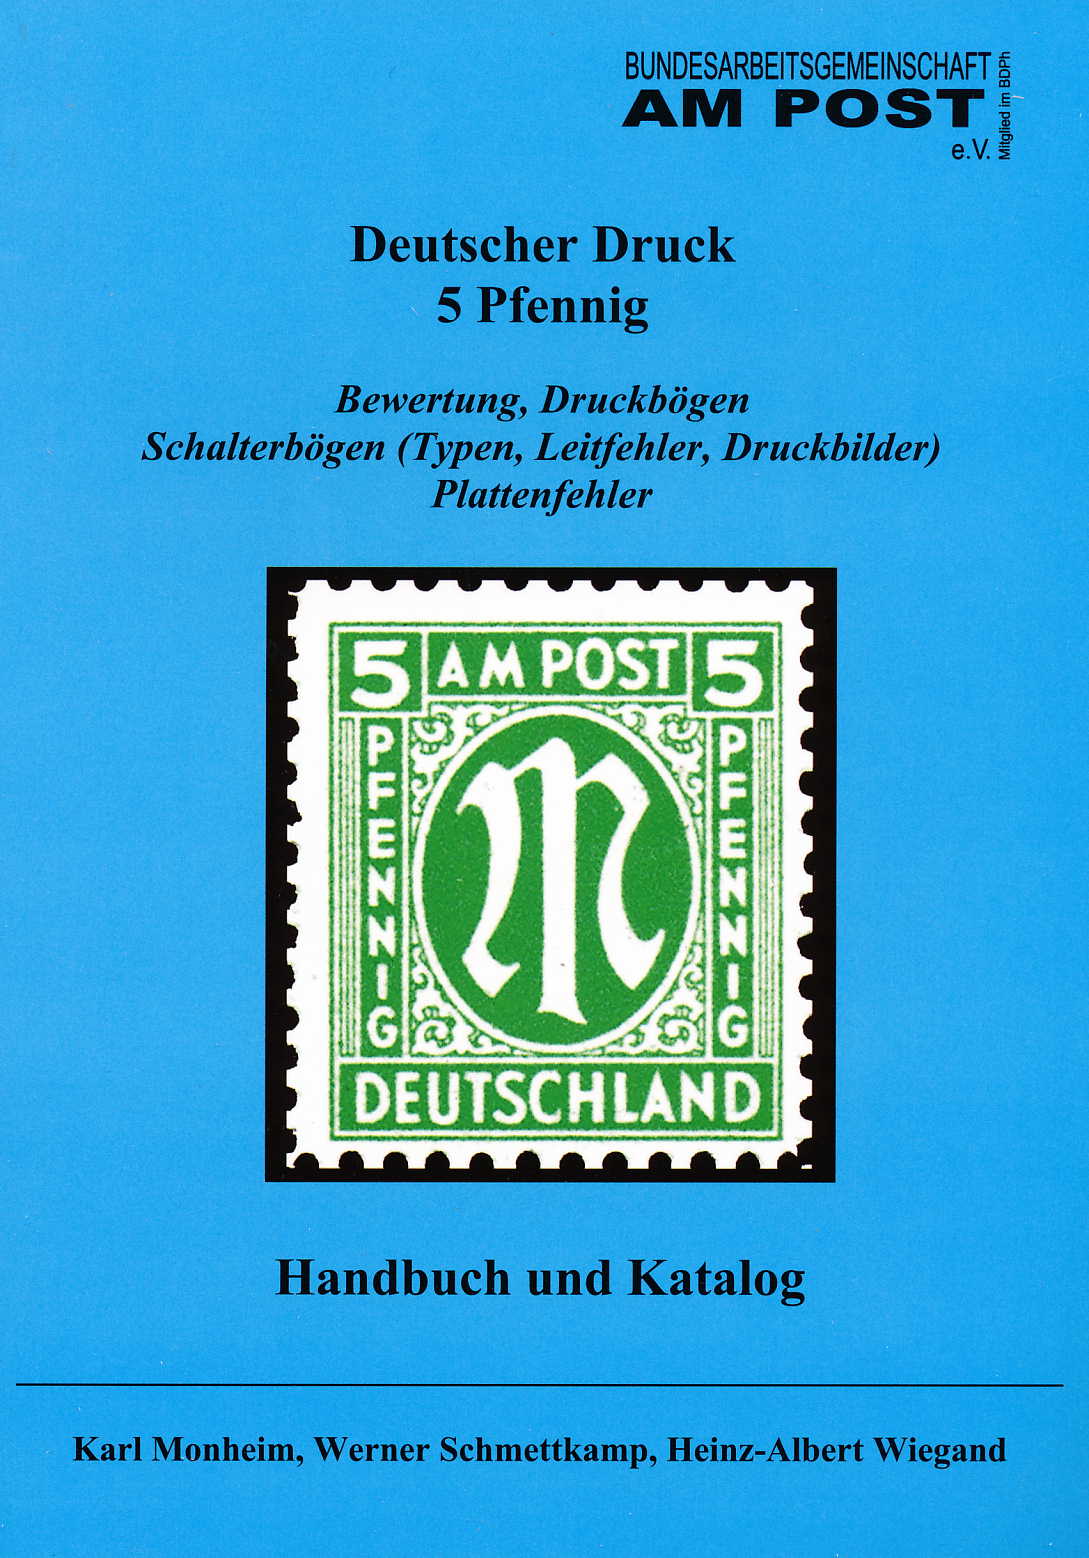 Monheim/Schmettkamp/Wiegand AM-Post Deutscher Druck 5 Pfennig